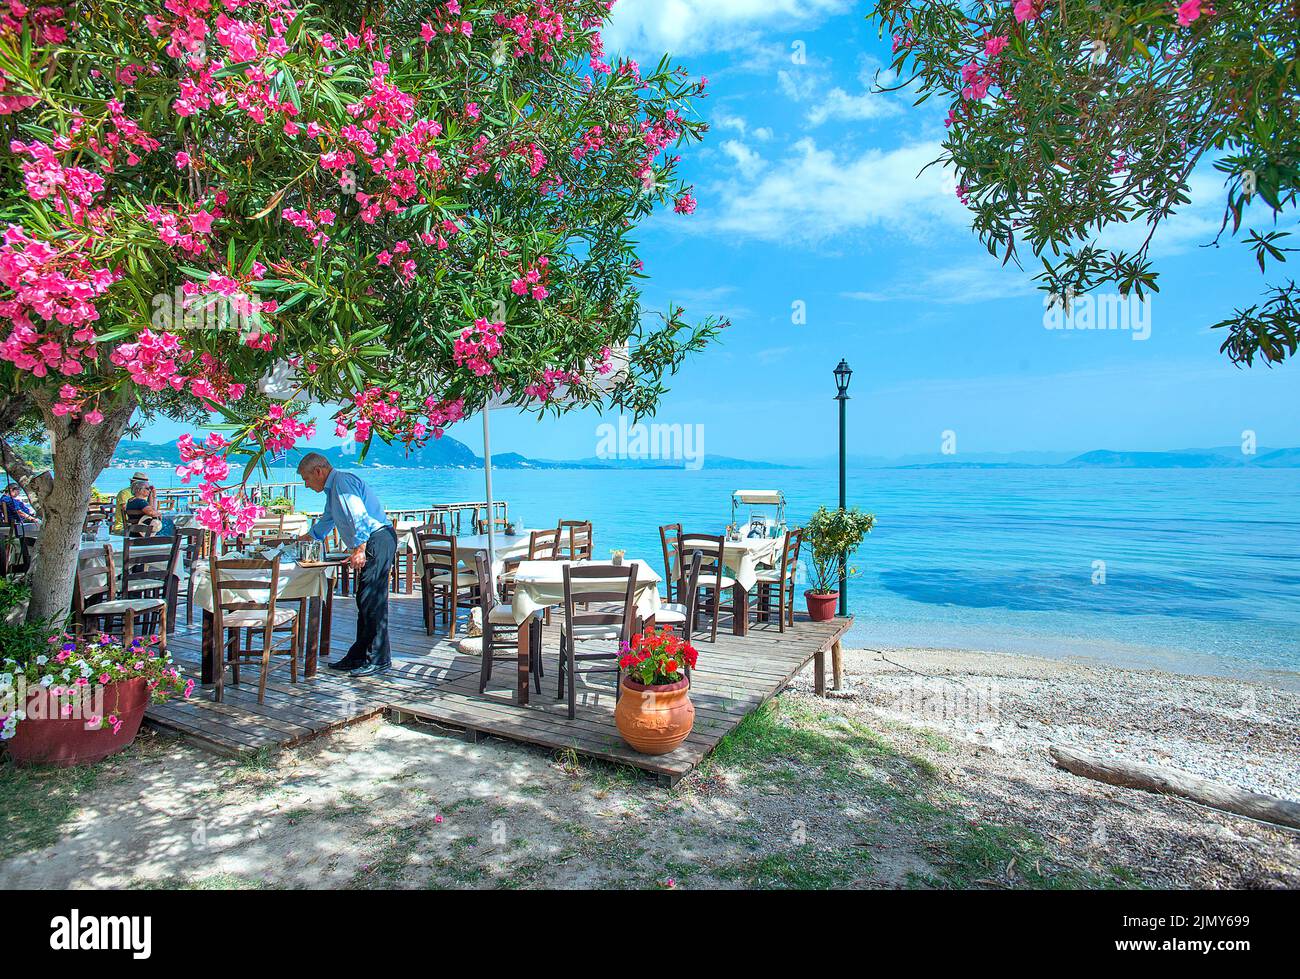 Boukari, Taverna avec vue sur la mer, Corfou, Iles Ioniennes, Grèce Banque D'Images